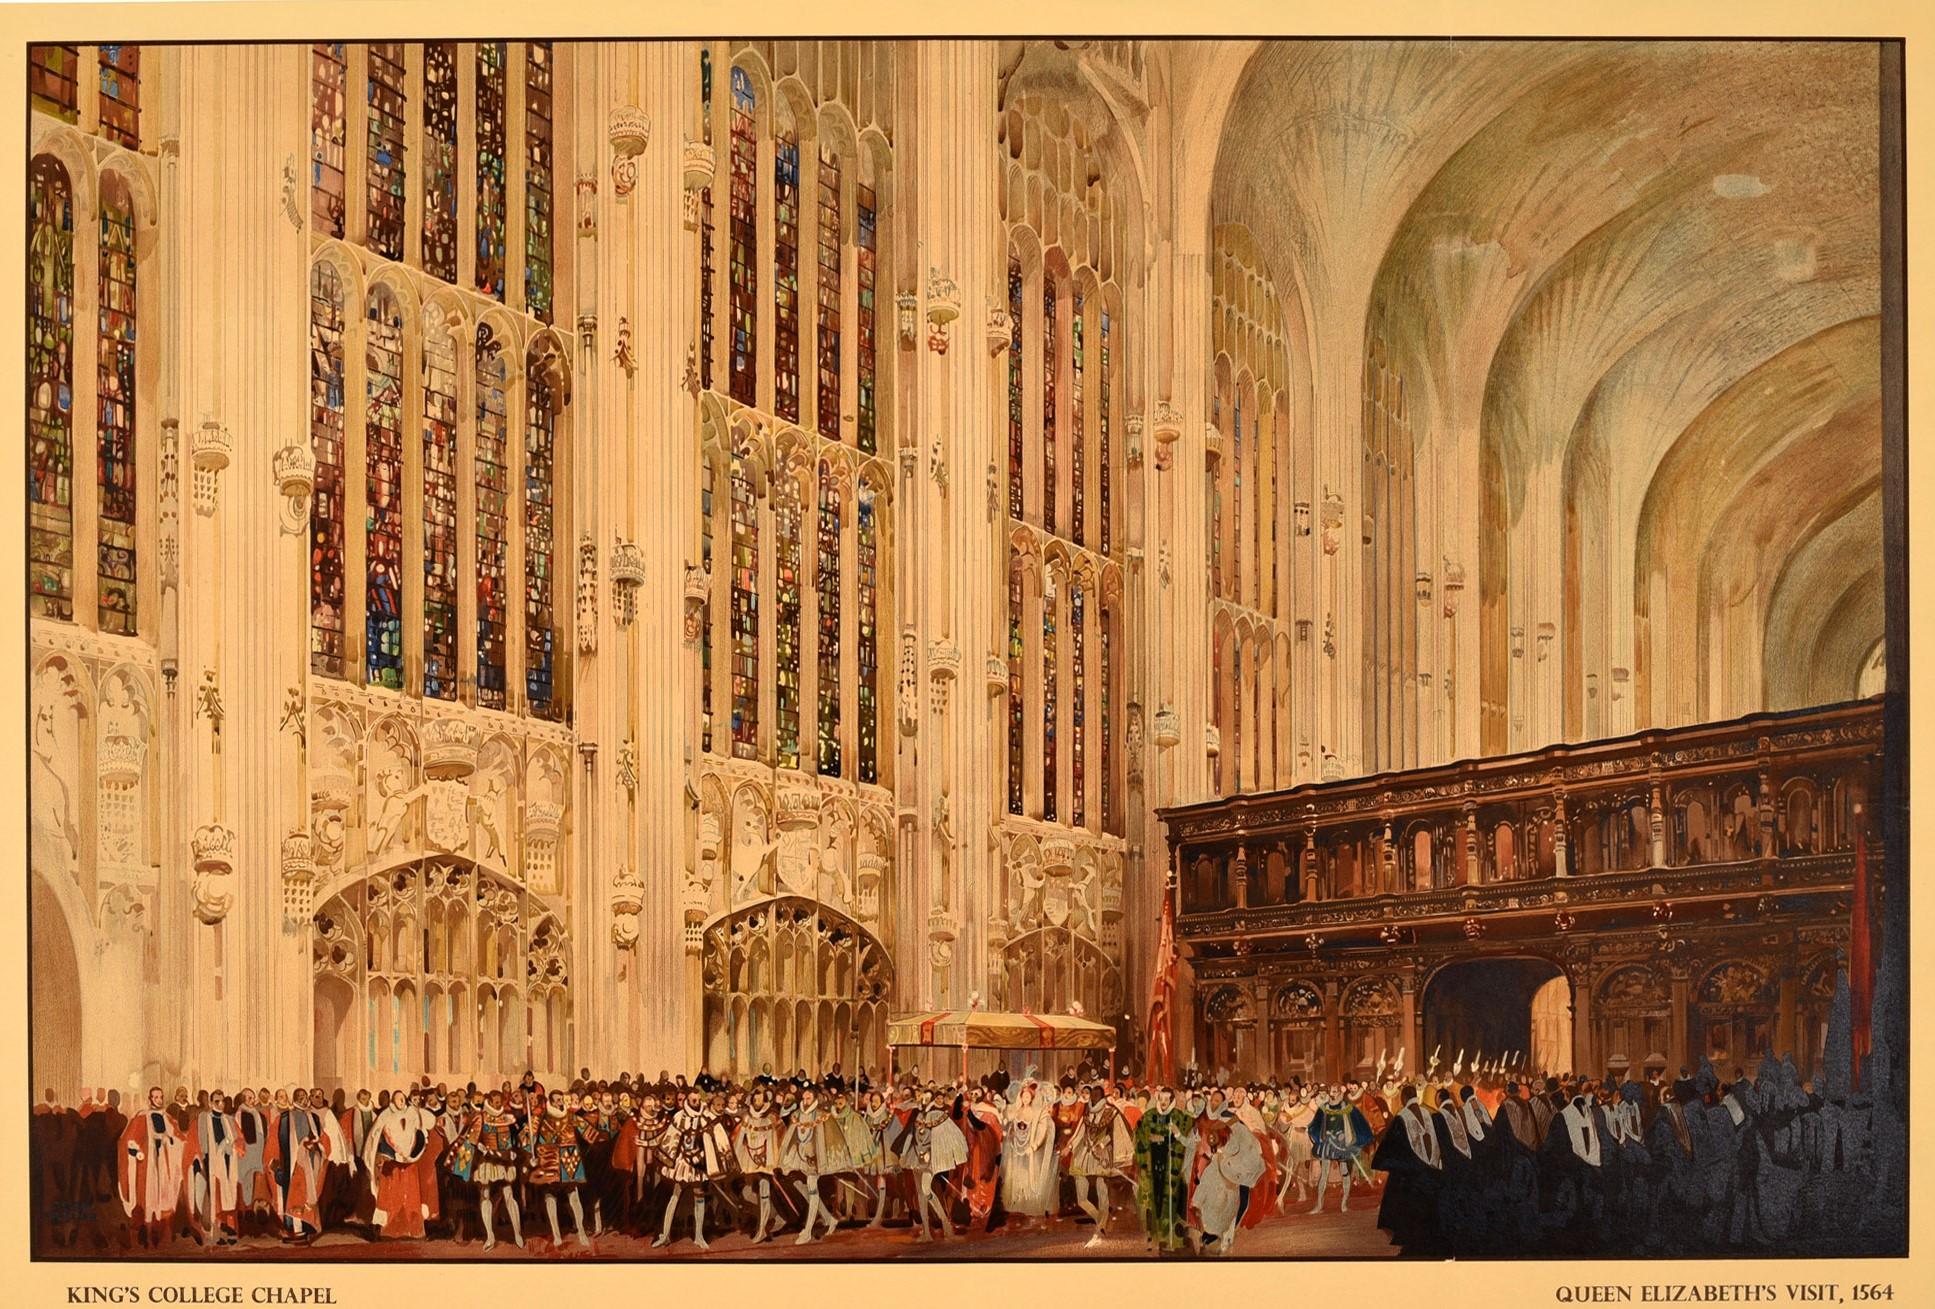 Affiche de voyage originale d'époque pour Cambridge, publiée par les chemins de fer britanniques, avec une superbe illustration de l'artiste notable Fred Taylor (1875-1963) représentant la visite de la reine Elizabeth à la chapelle du King's College